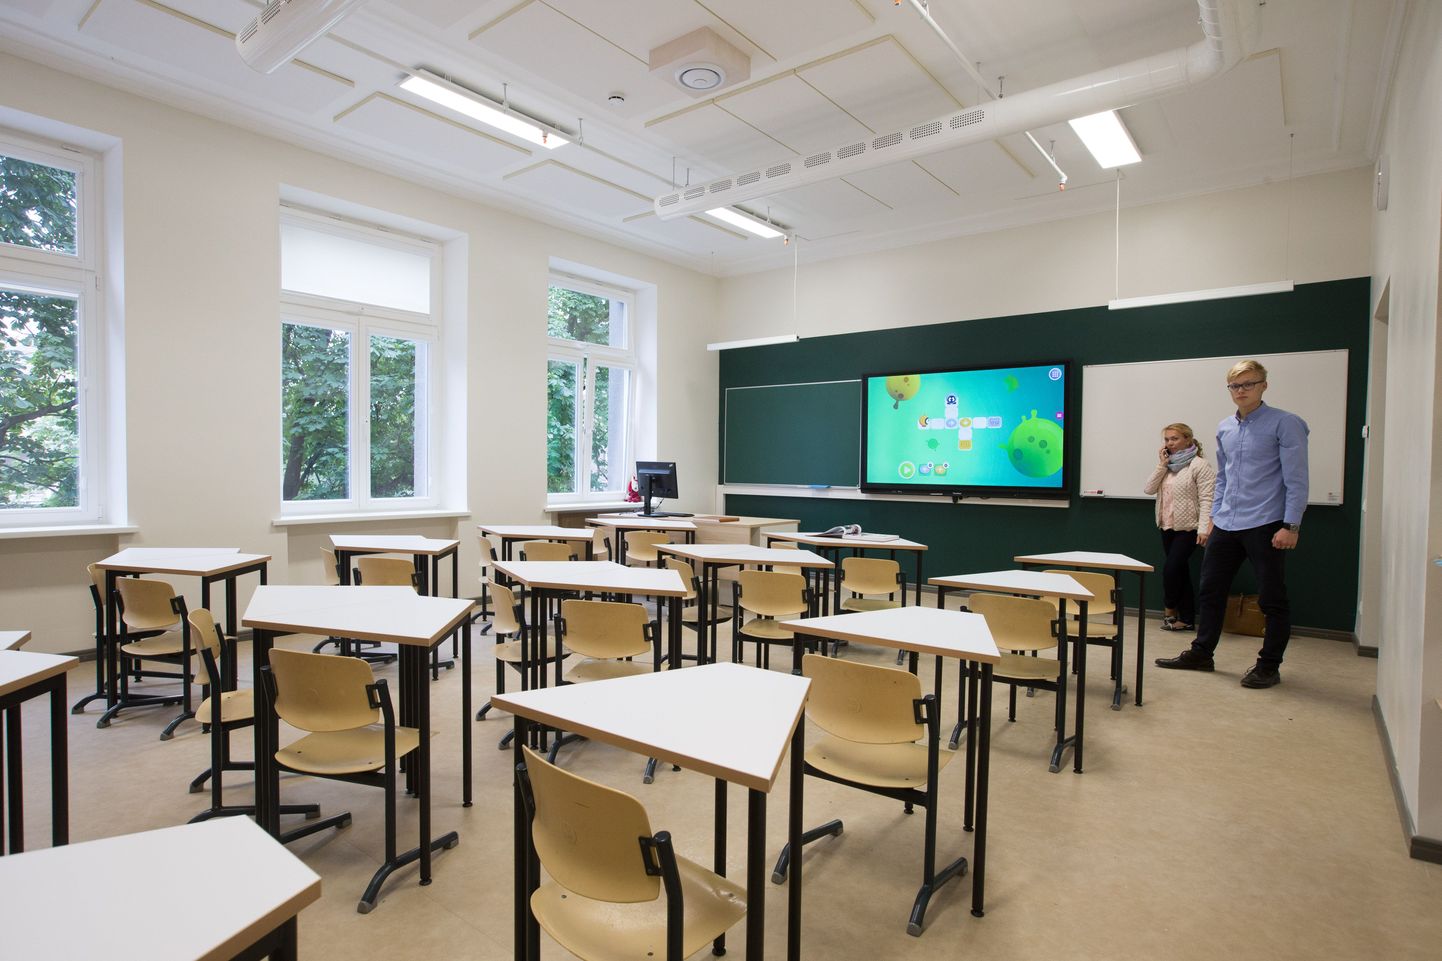 Gustav Adolfi gümnaasiumi (GAG) õppehoone. Alates 2018/2019 õppeaastast GAGi esimestesse klassidesse enam katseid ei toimu.